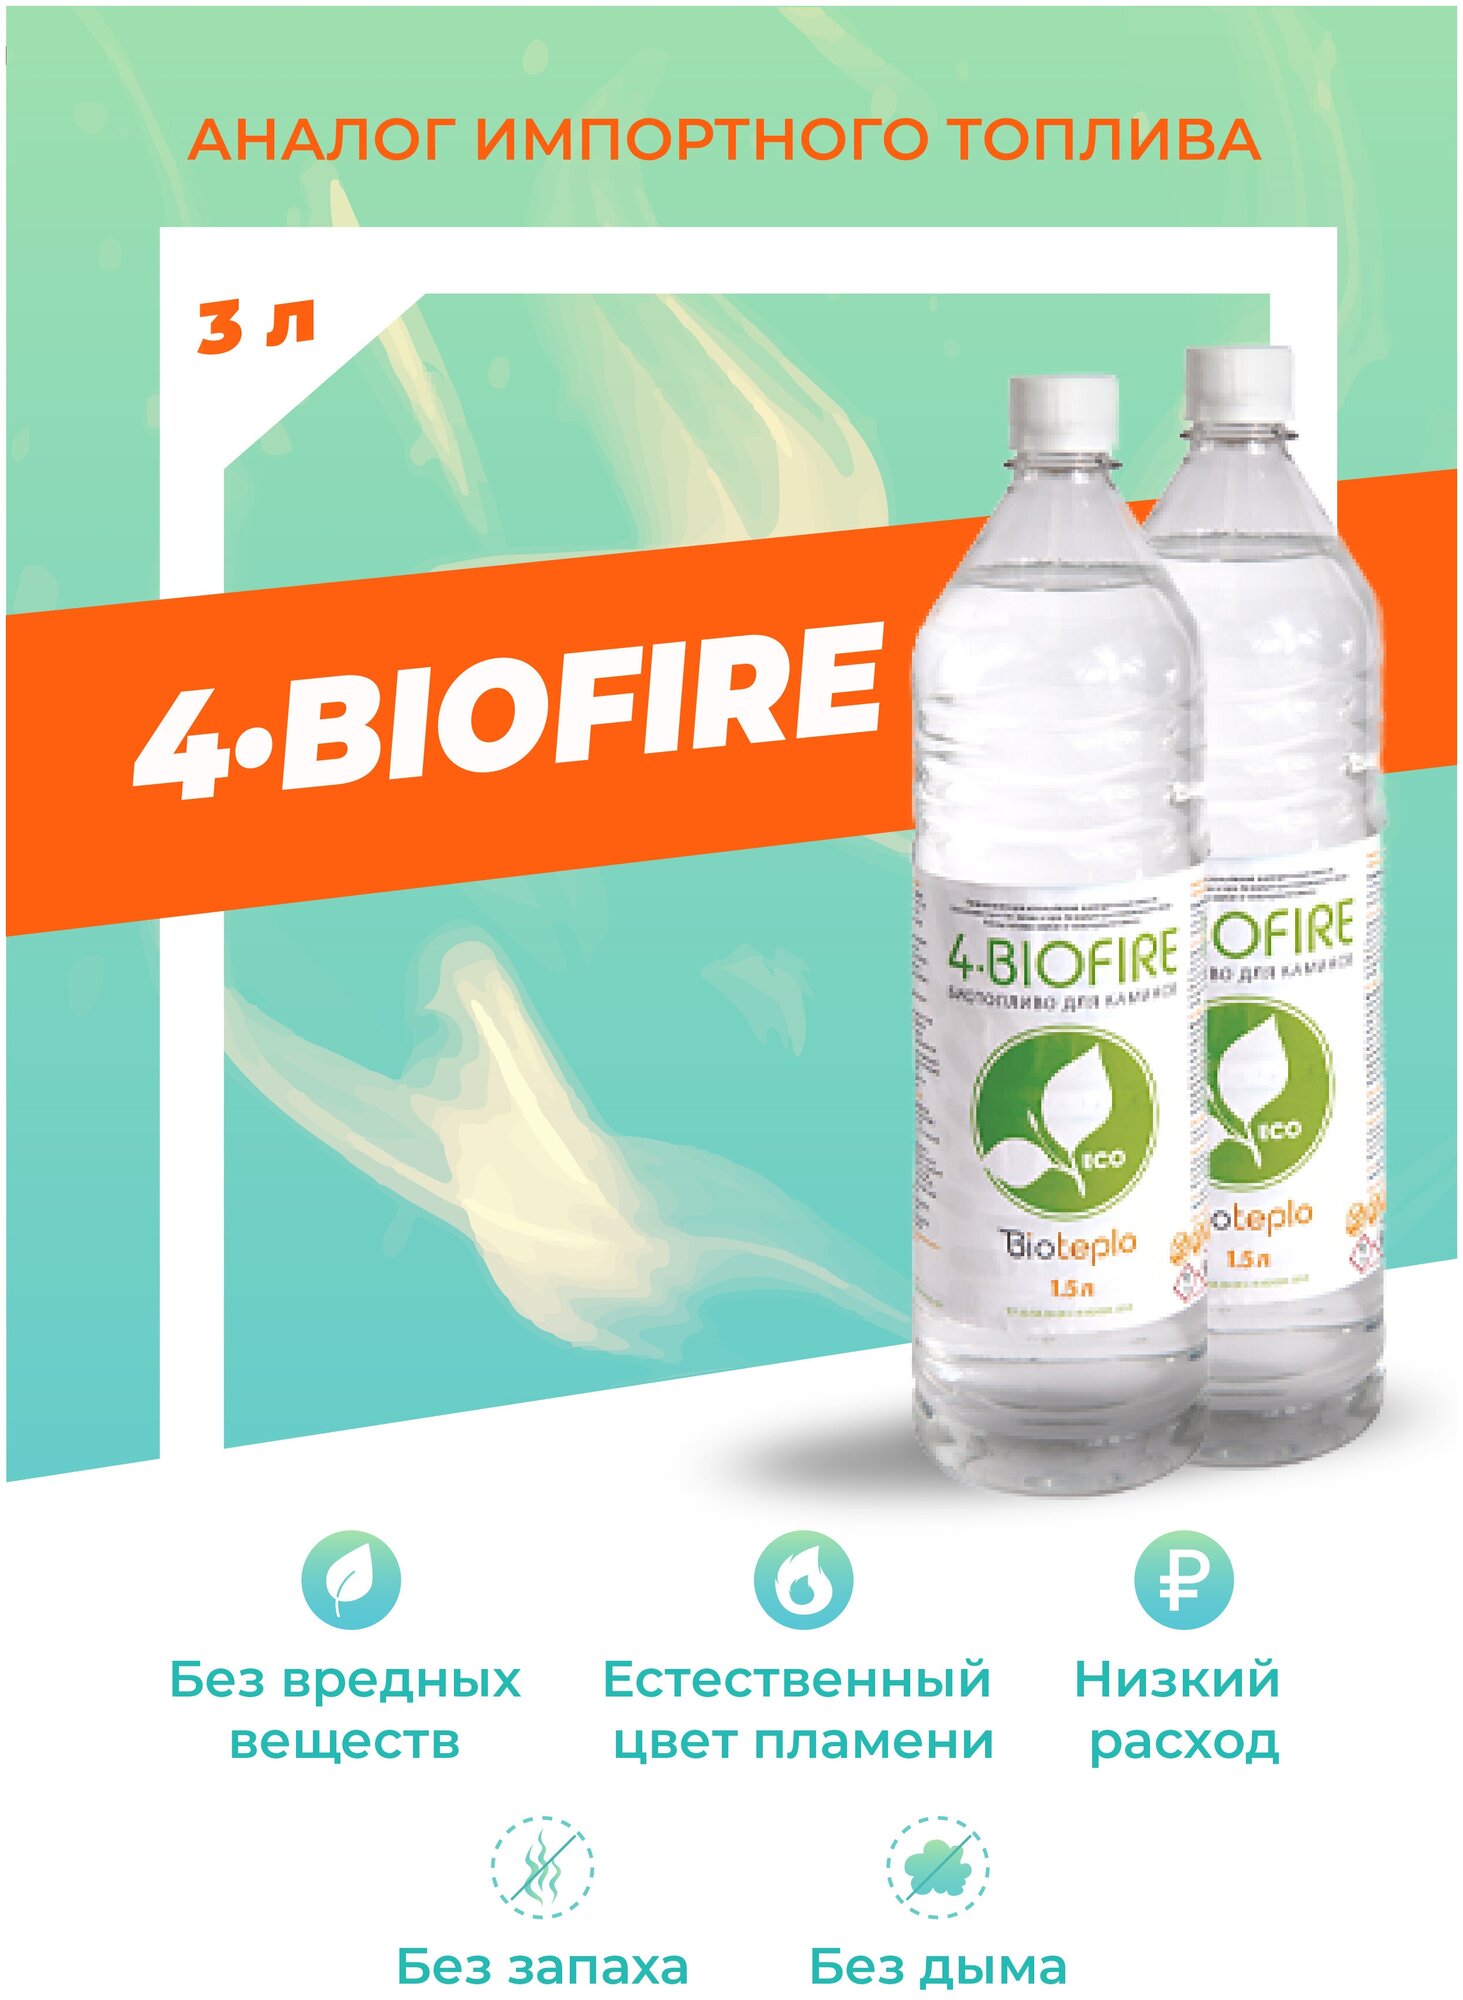 Биотопливо для биокаминов Bioteplo "4 Biofire" 3 литра